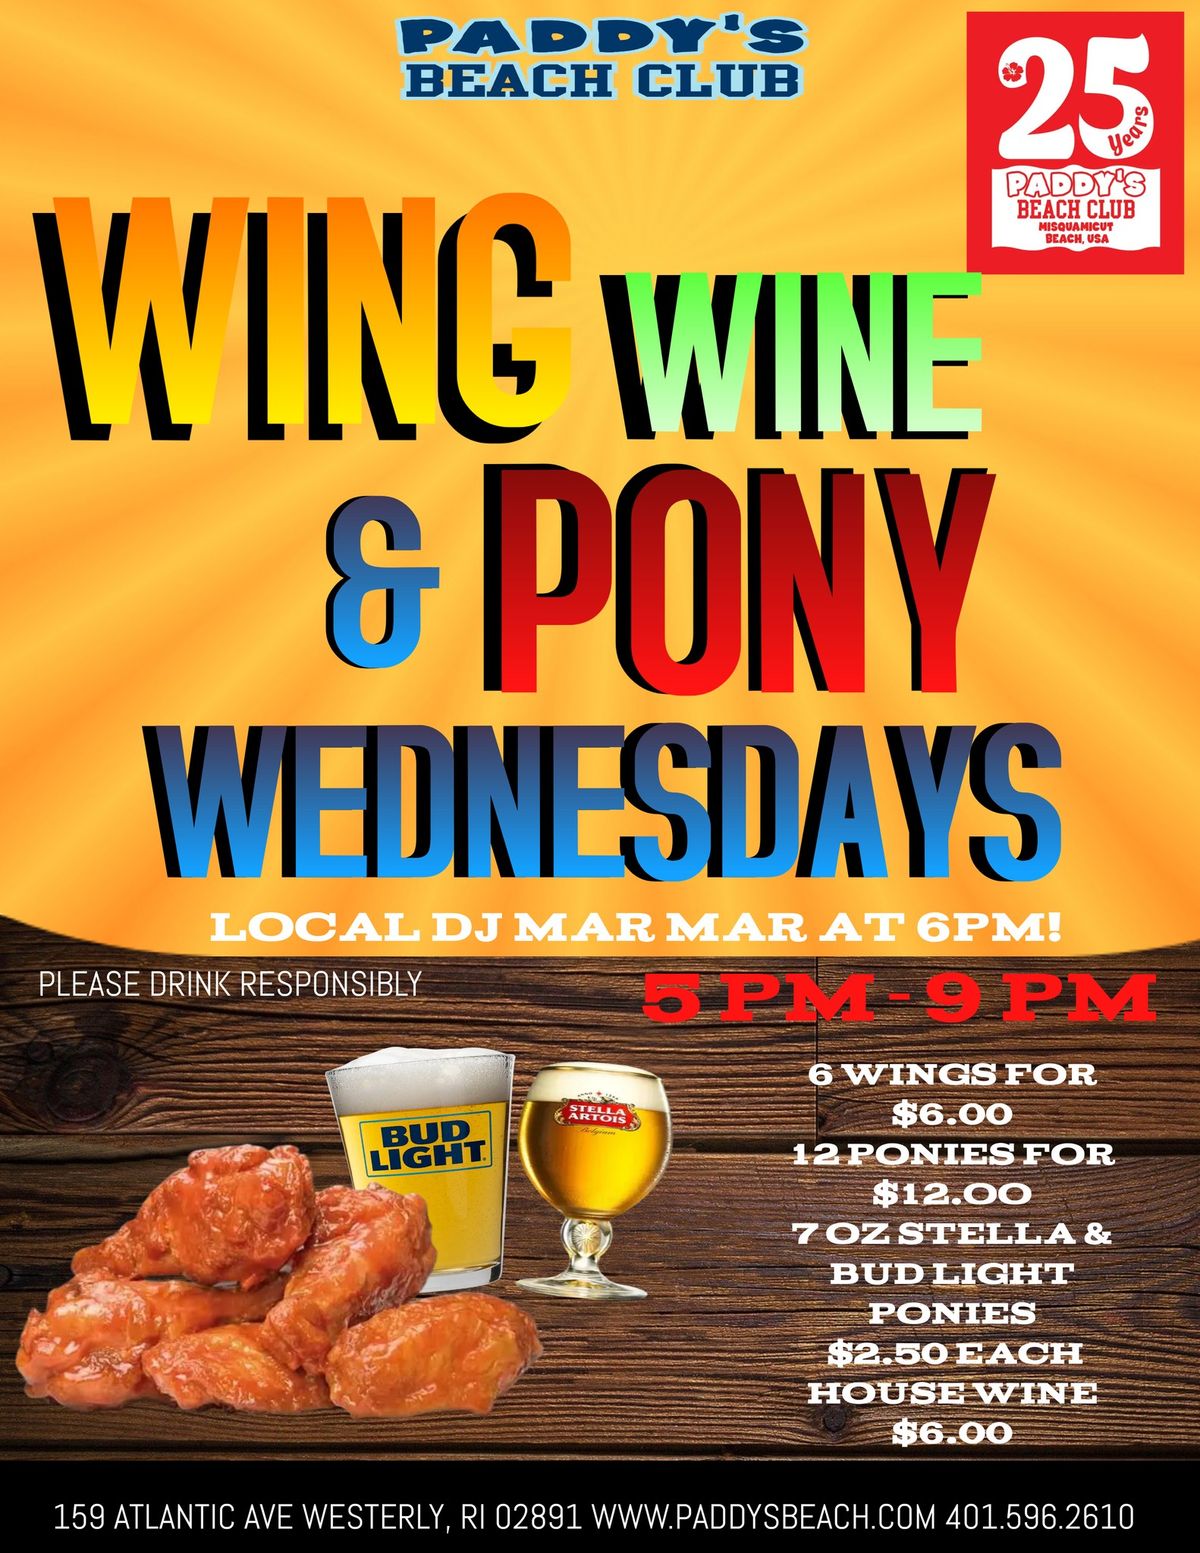 Wing, Wine, & Pony Wednesdays with Local DJ MarMar